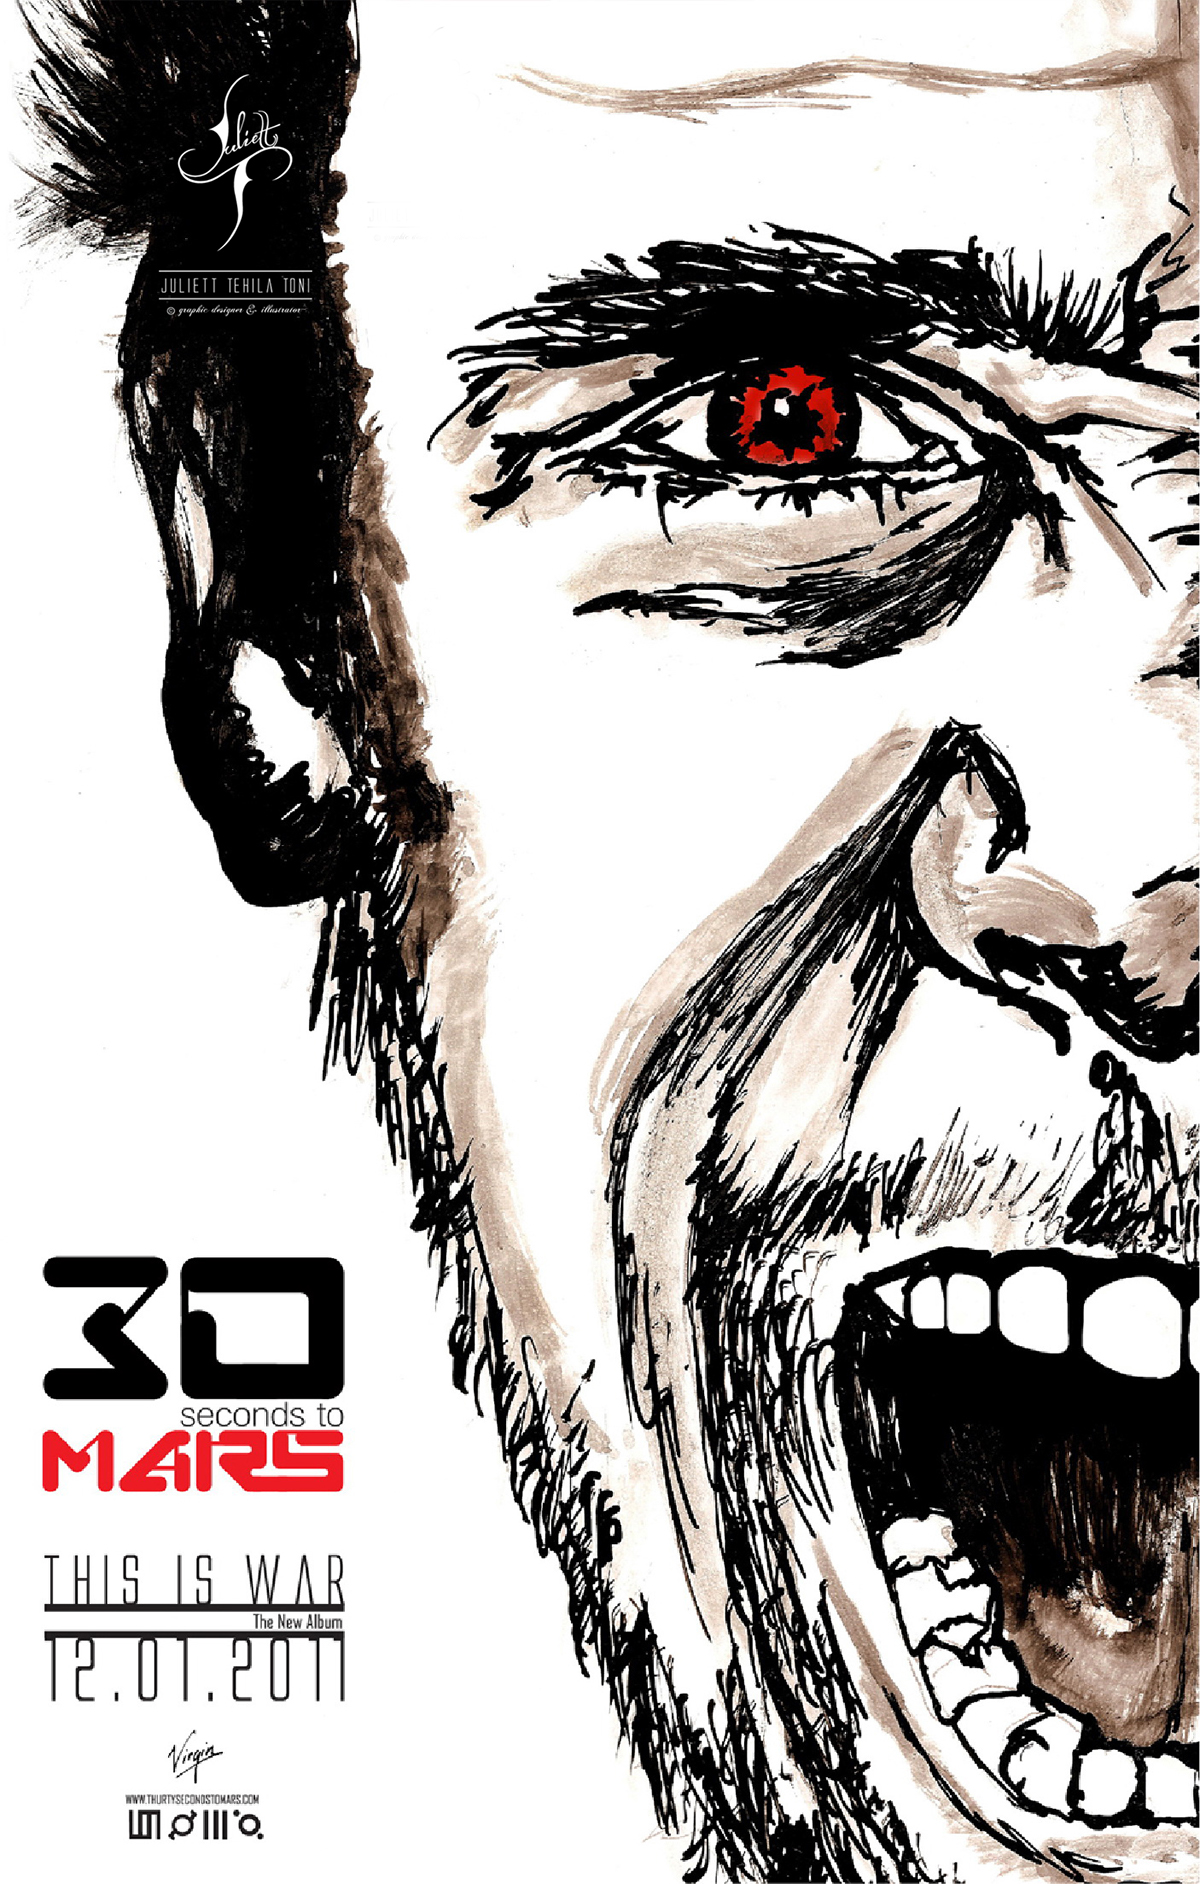 30 Seconds to Mar cd War Album